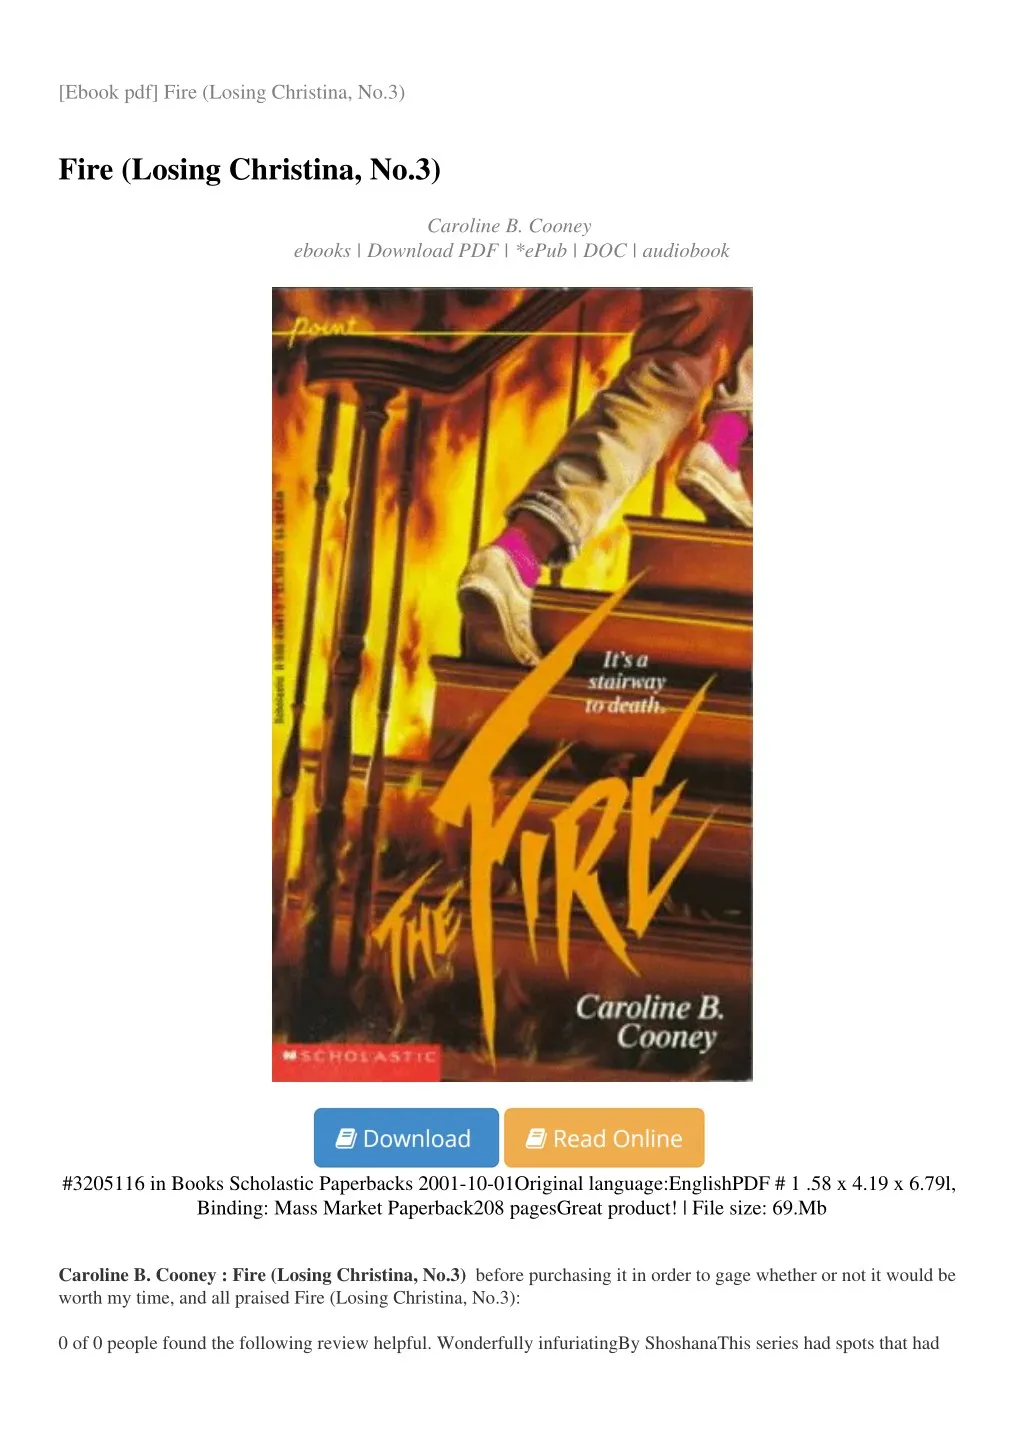 ebook pdf fire losing christina no 3